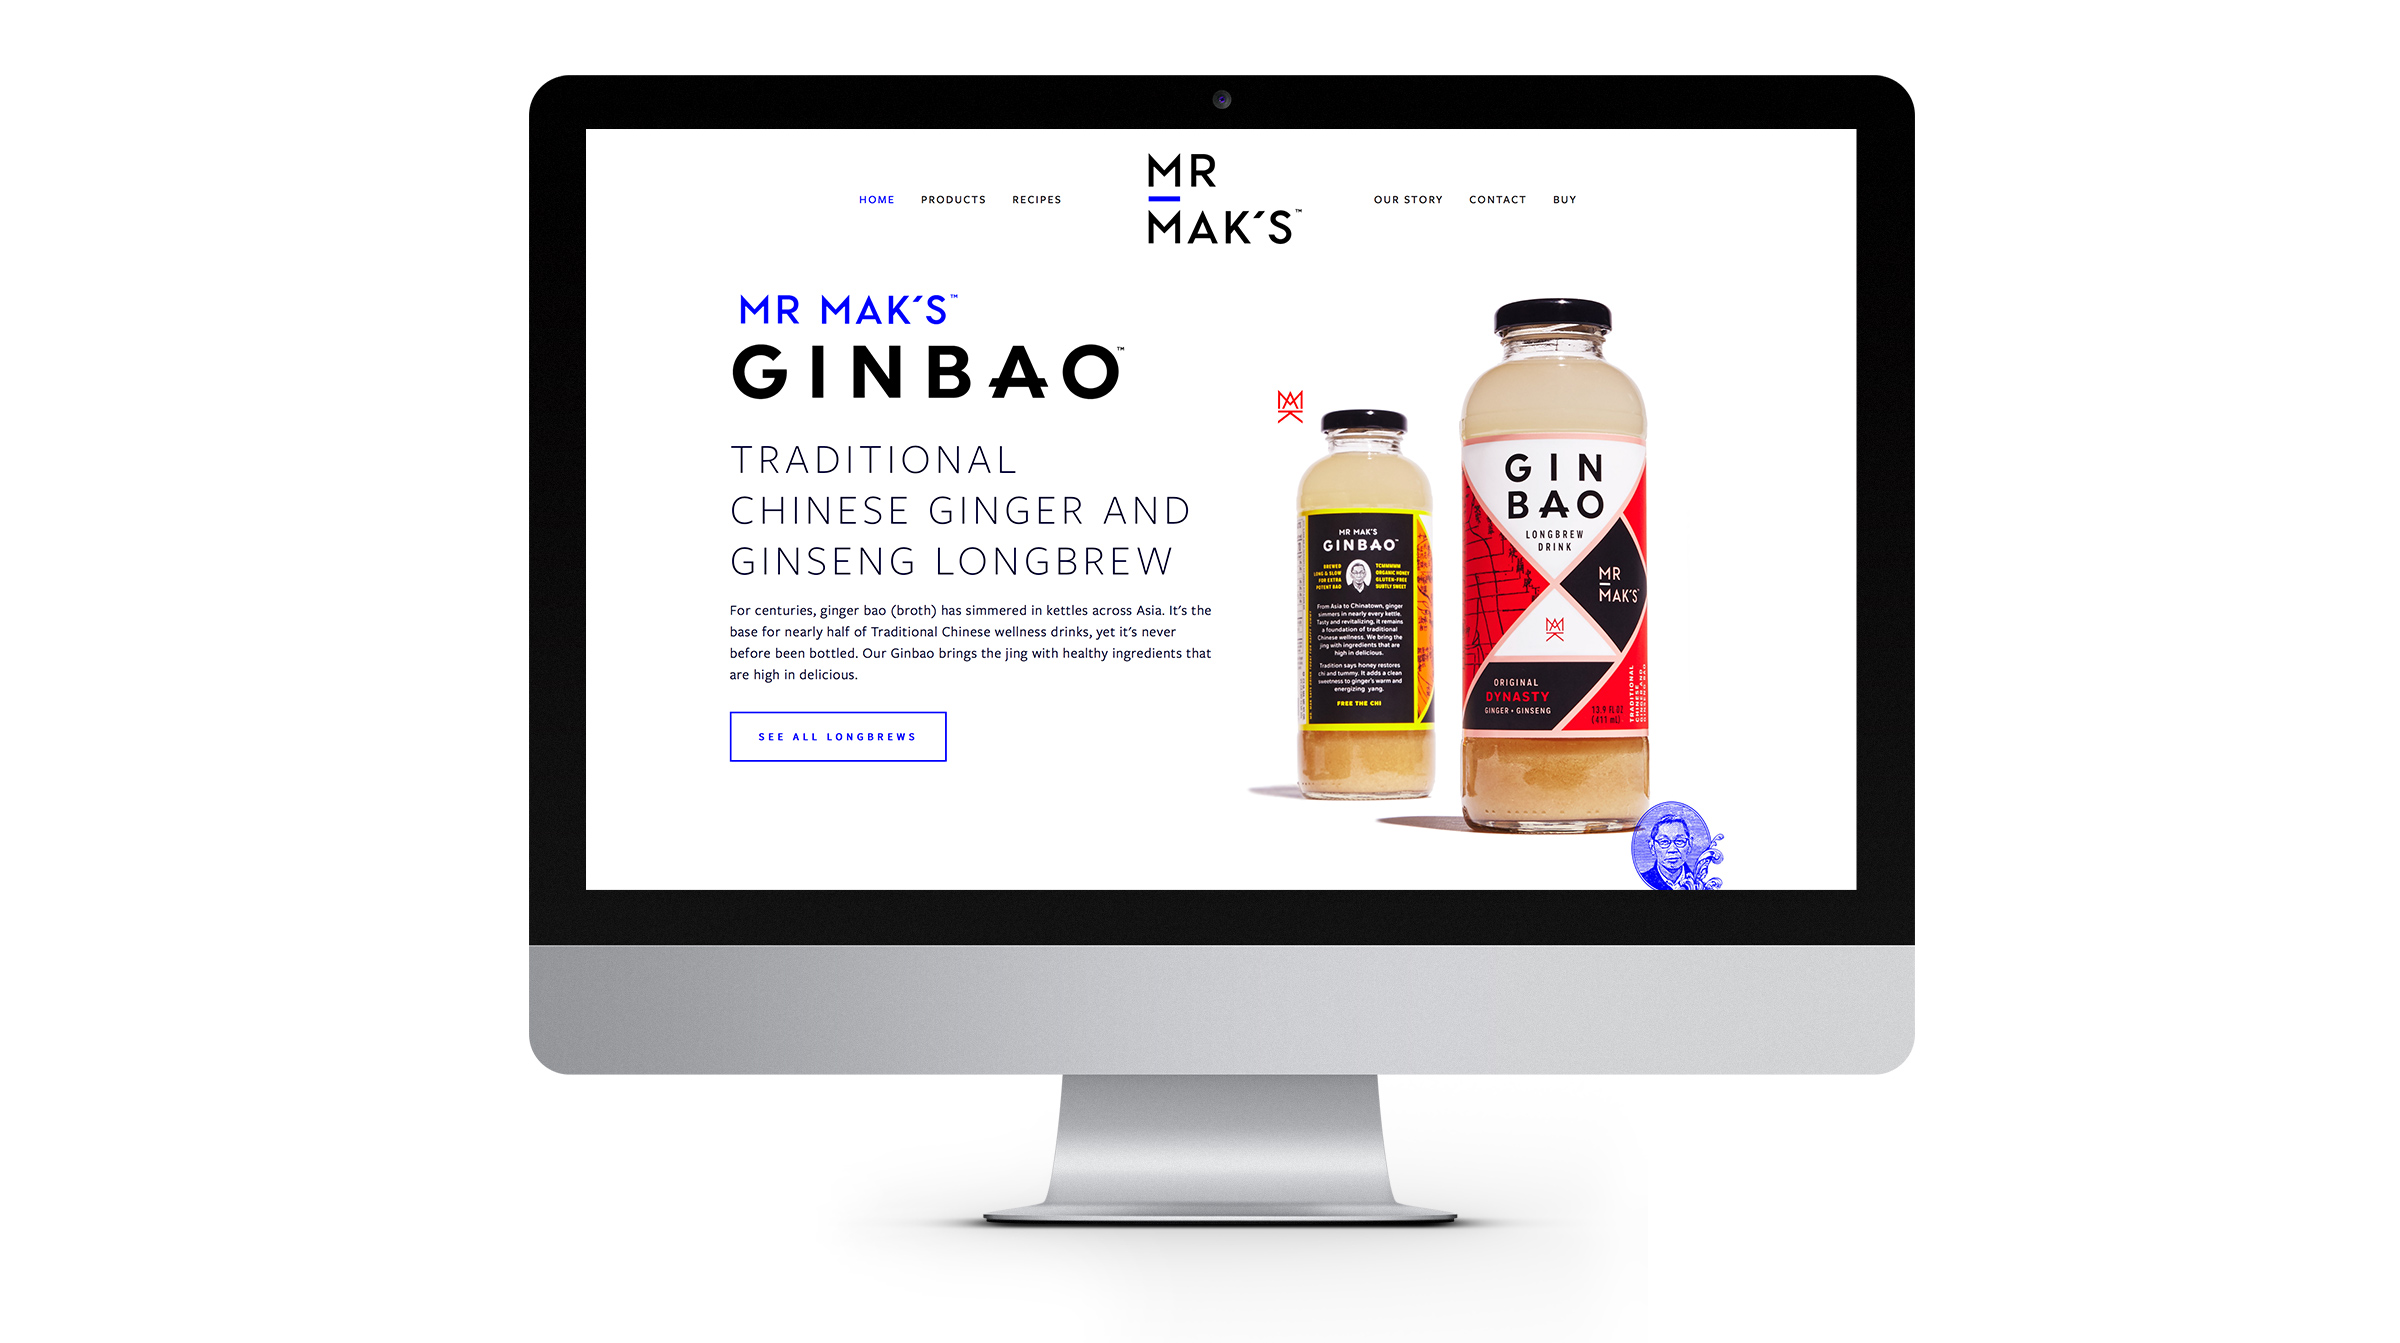 Mr. Maks website design by Werner Design Werks